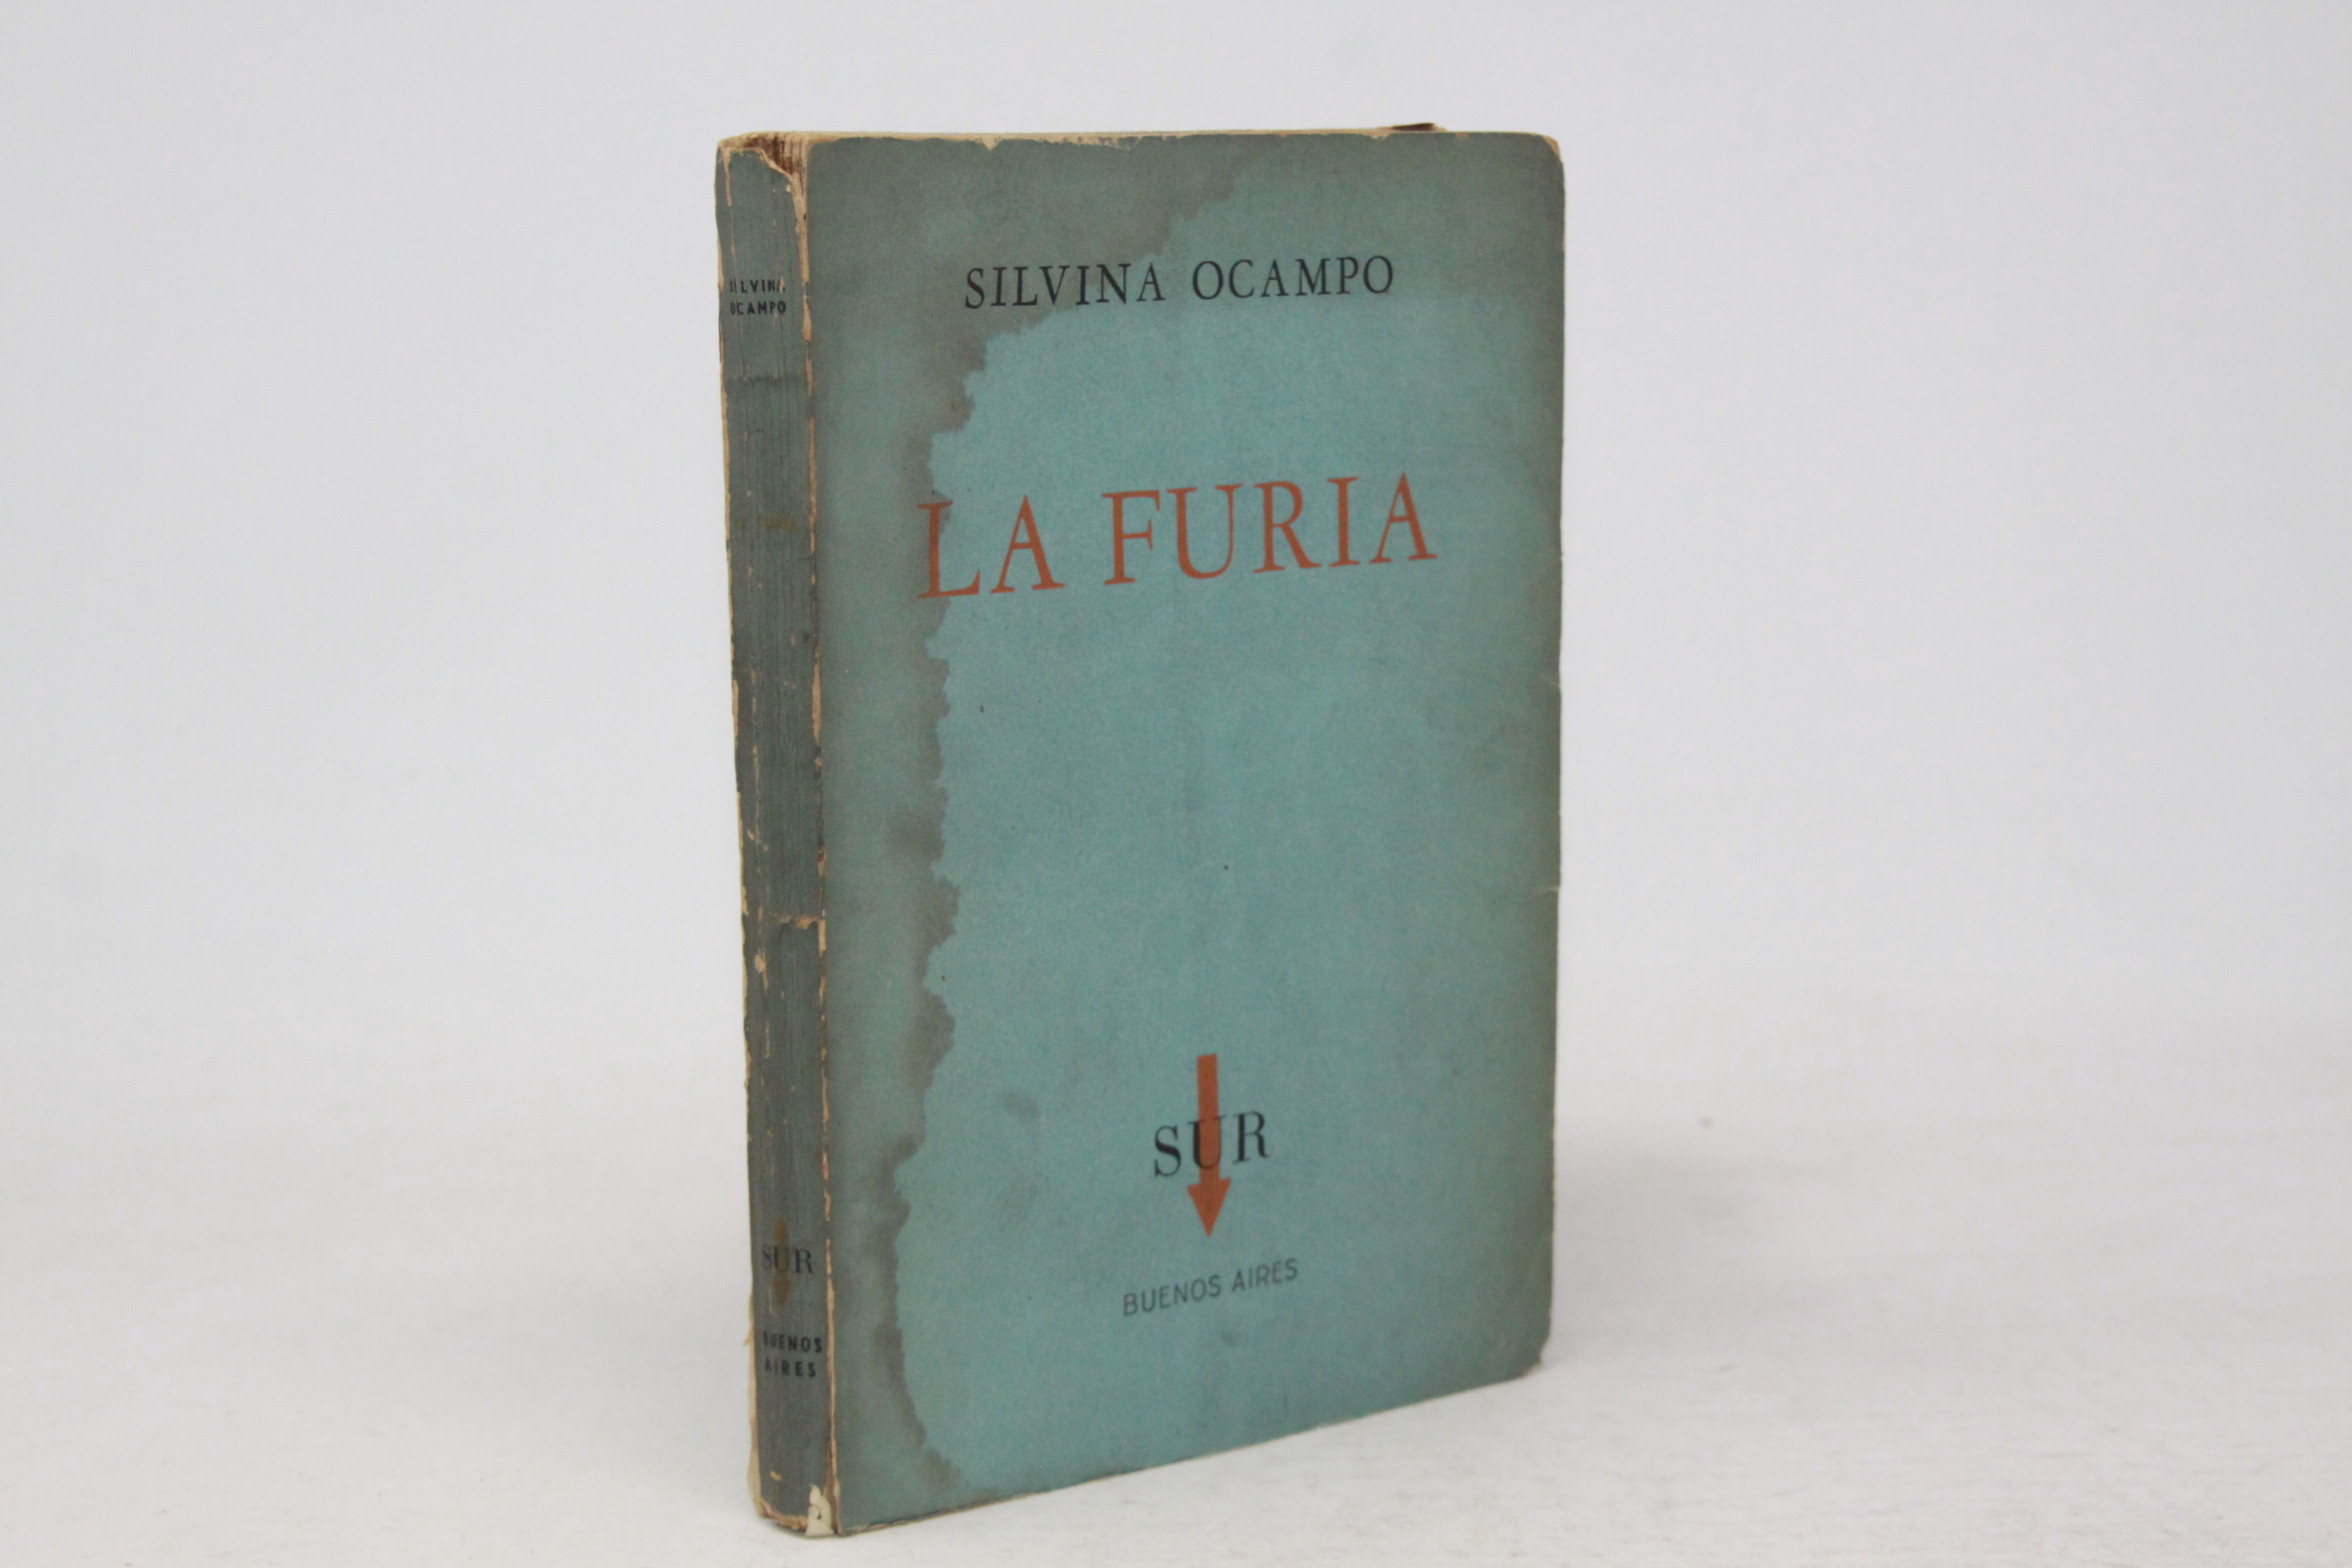 La furia by Silvina Ocampo